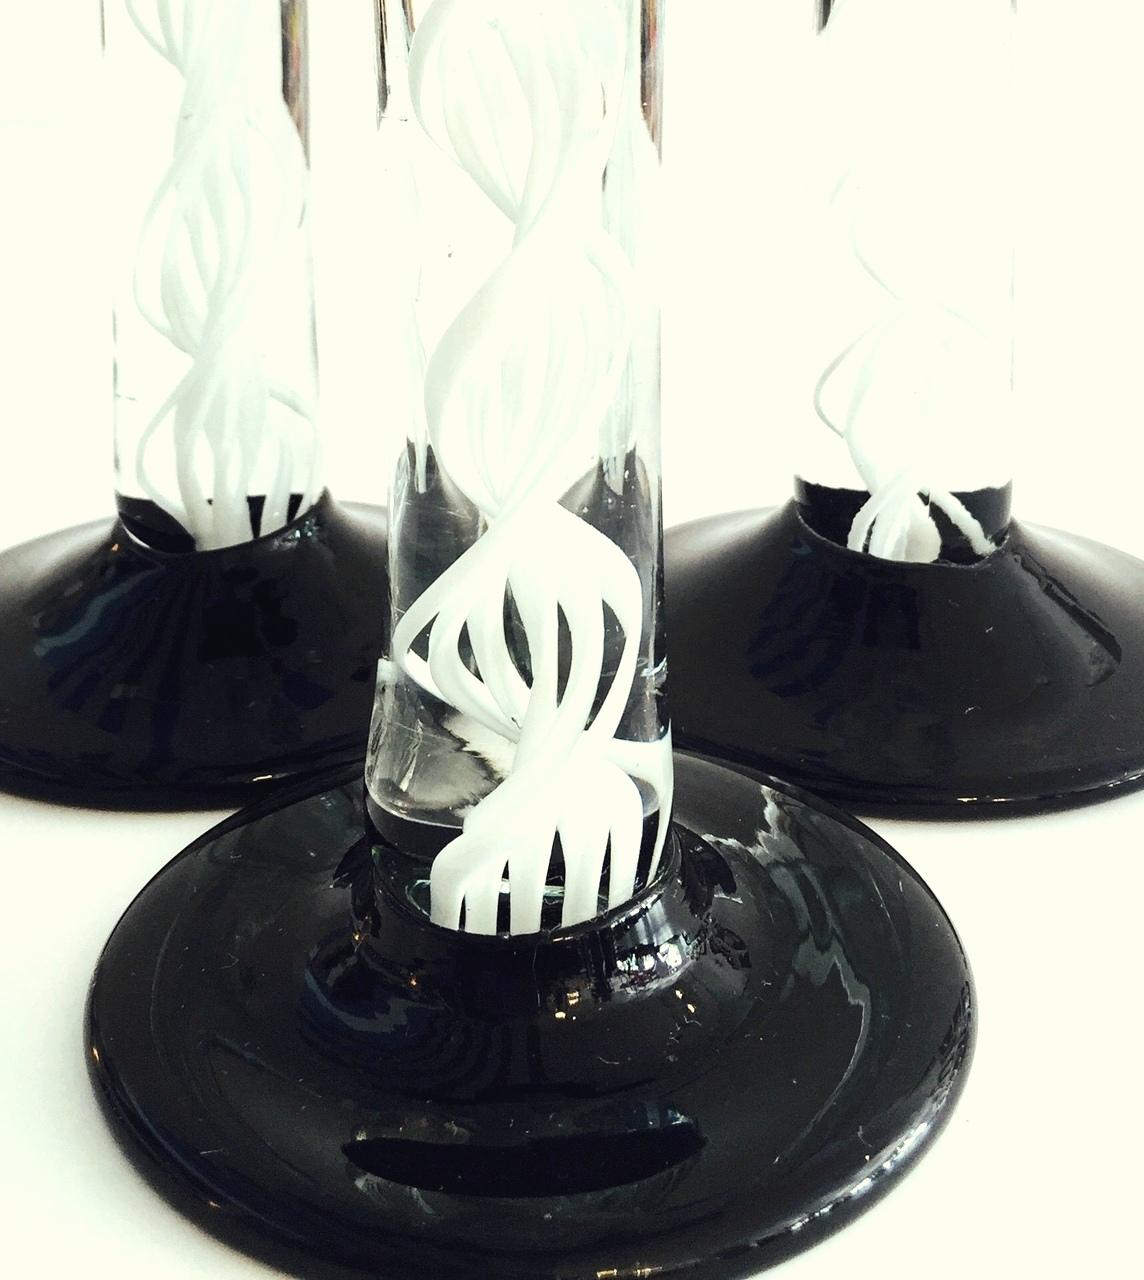 20th Century 1980s Italian Murano Glass Black and White Swirl Candlestick Set of Three